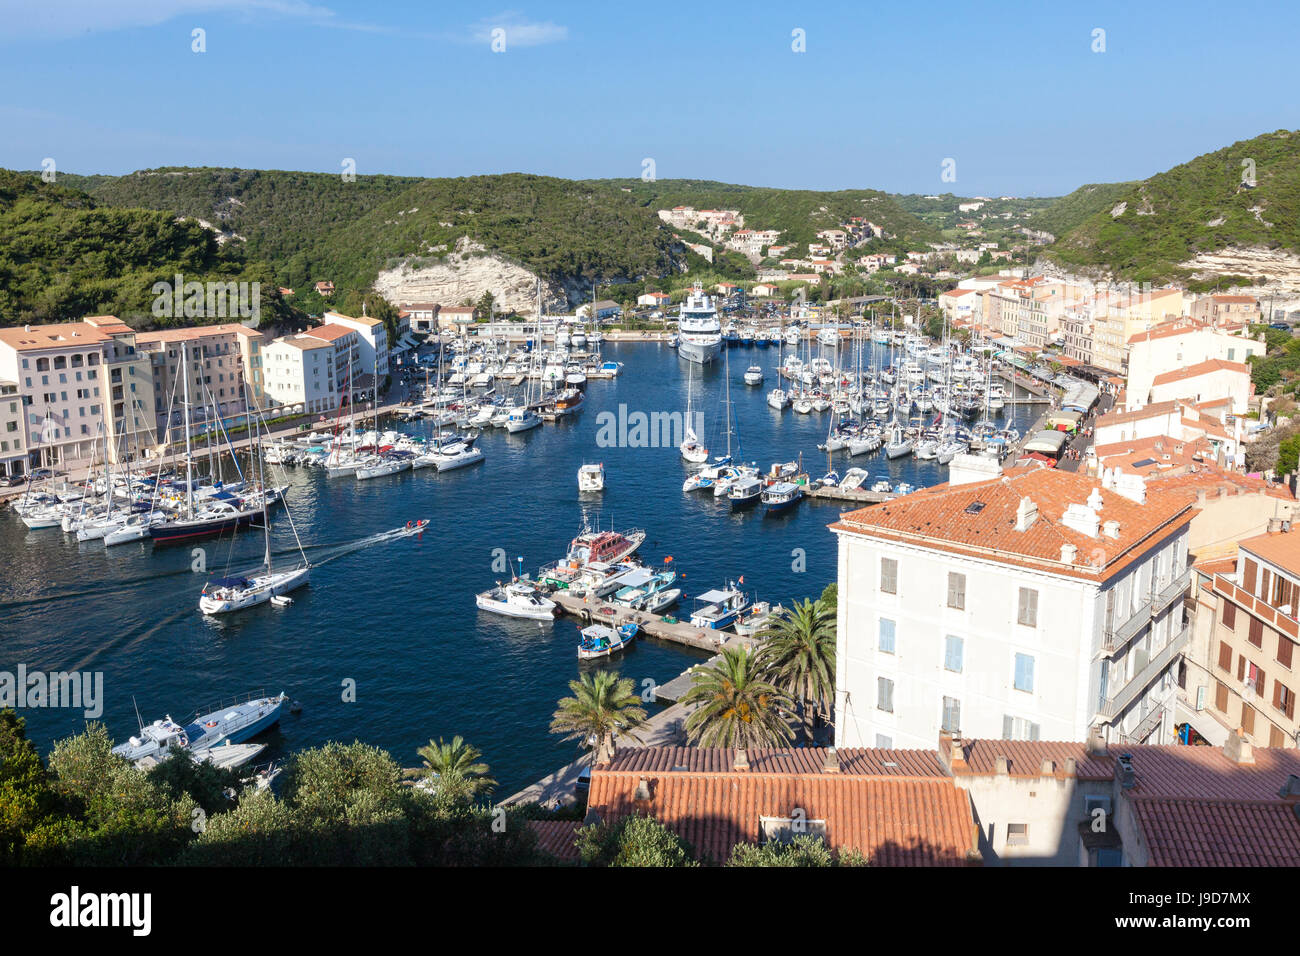 Il verde della vegetazione incornicia la città medievale e il porto, Bonifacio, Corsica, Francia, Mediterraneo, Europa Foto Stock